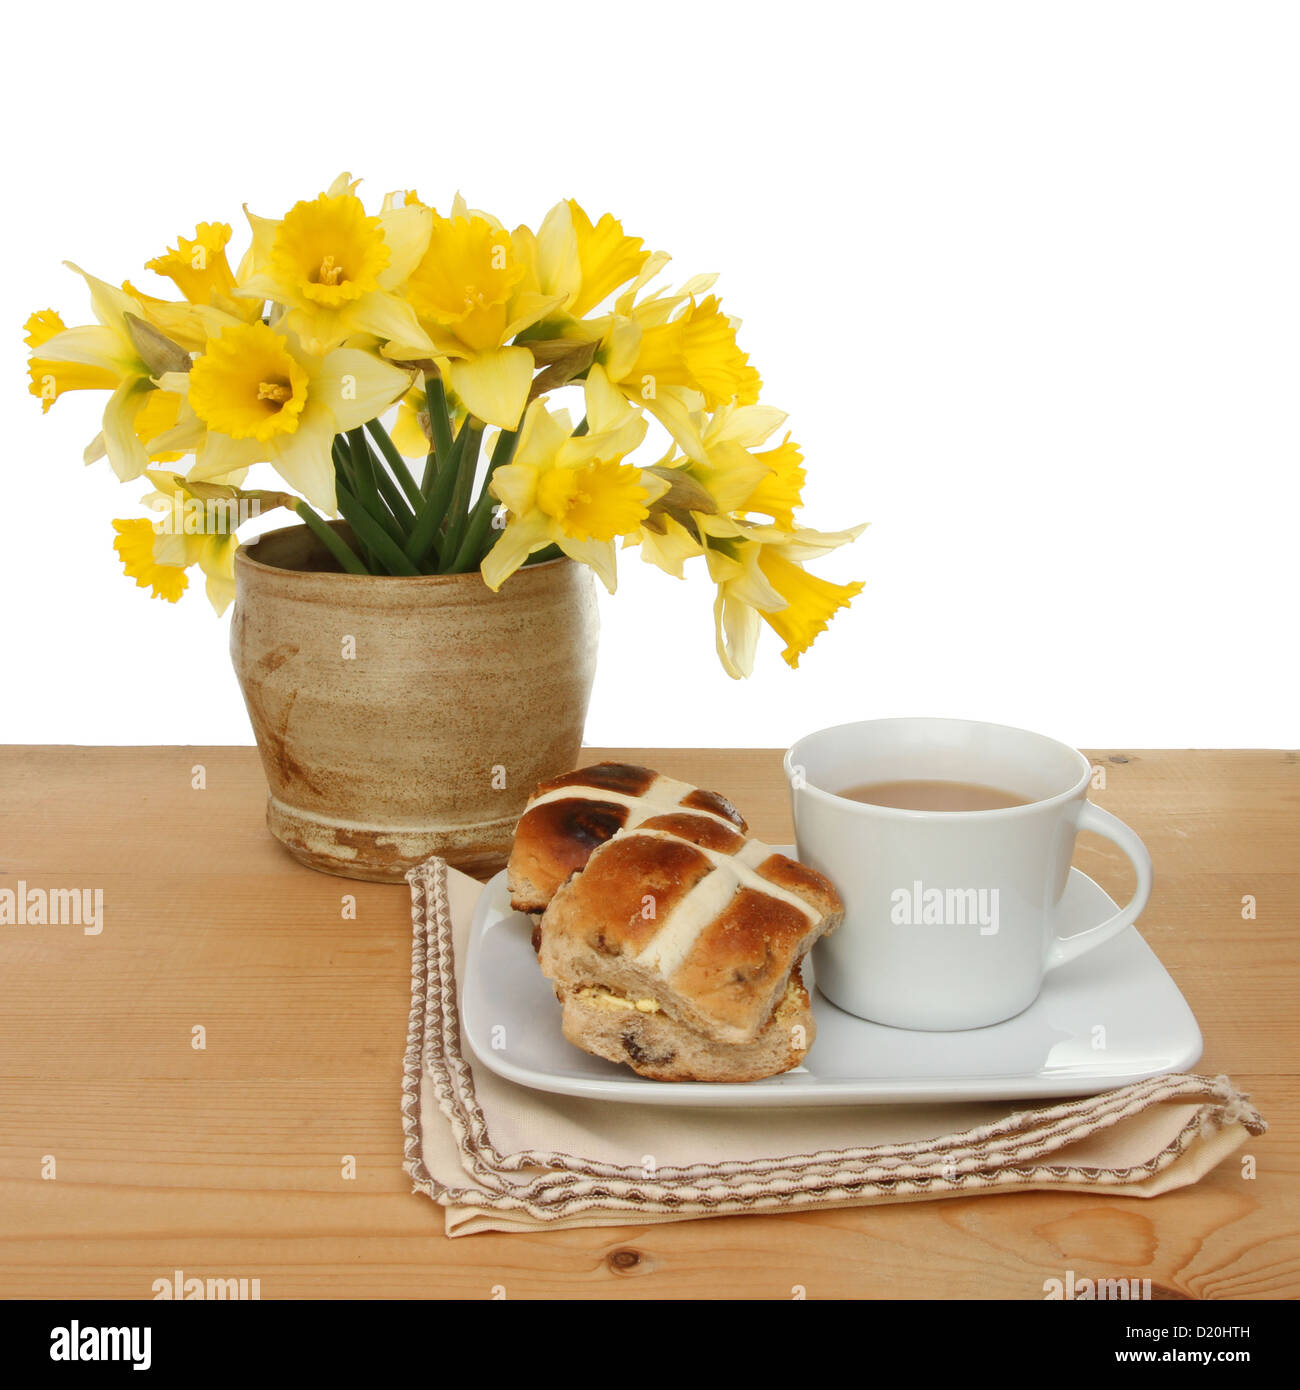 Pasqua tema, hot cross panini e una tazza di tè con daffodil fiori su un tavolo contro uno sfondo bianco Foto Stock